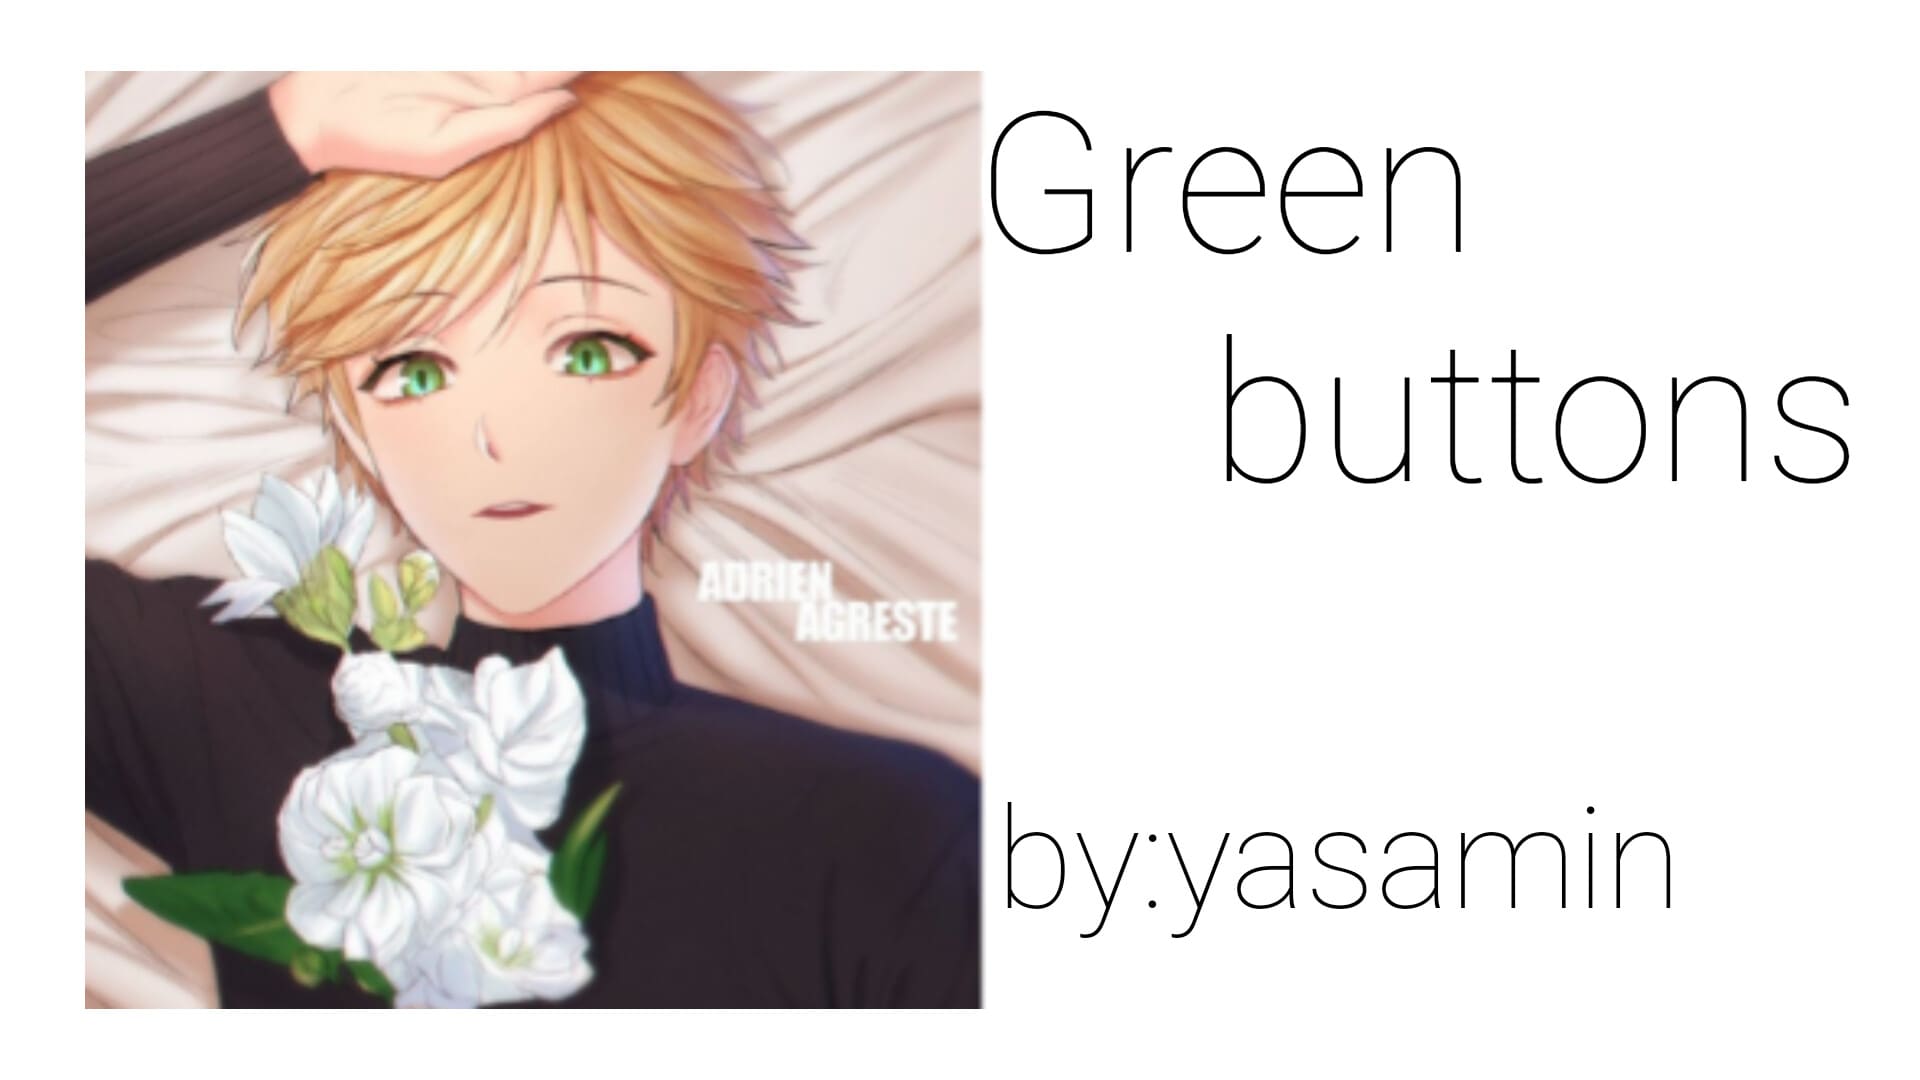 Green buttons_p6